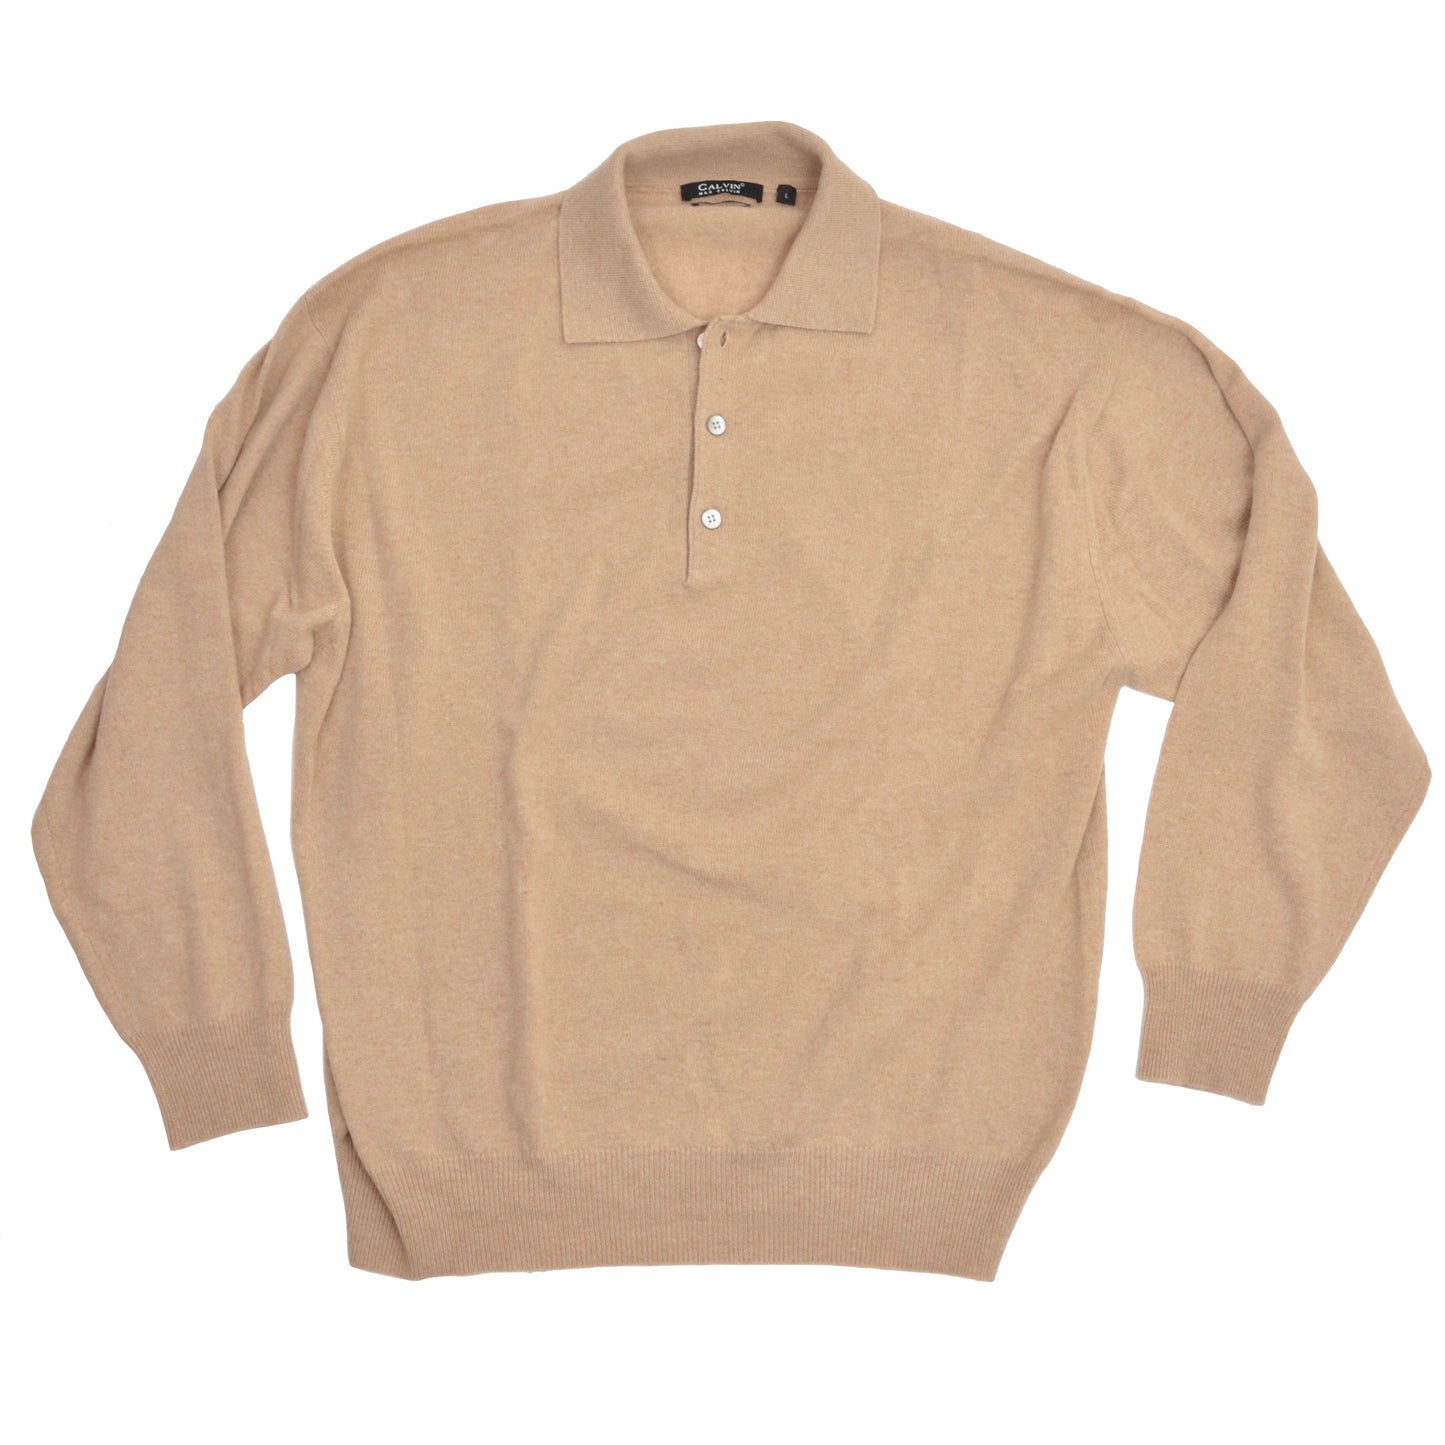 Max Calvin 100% Cashmere Polo Sweater Size L - Beige/Tan